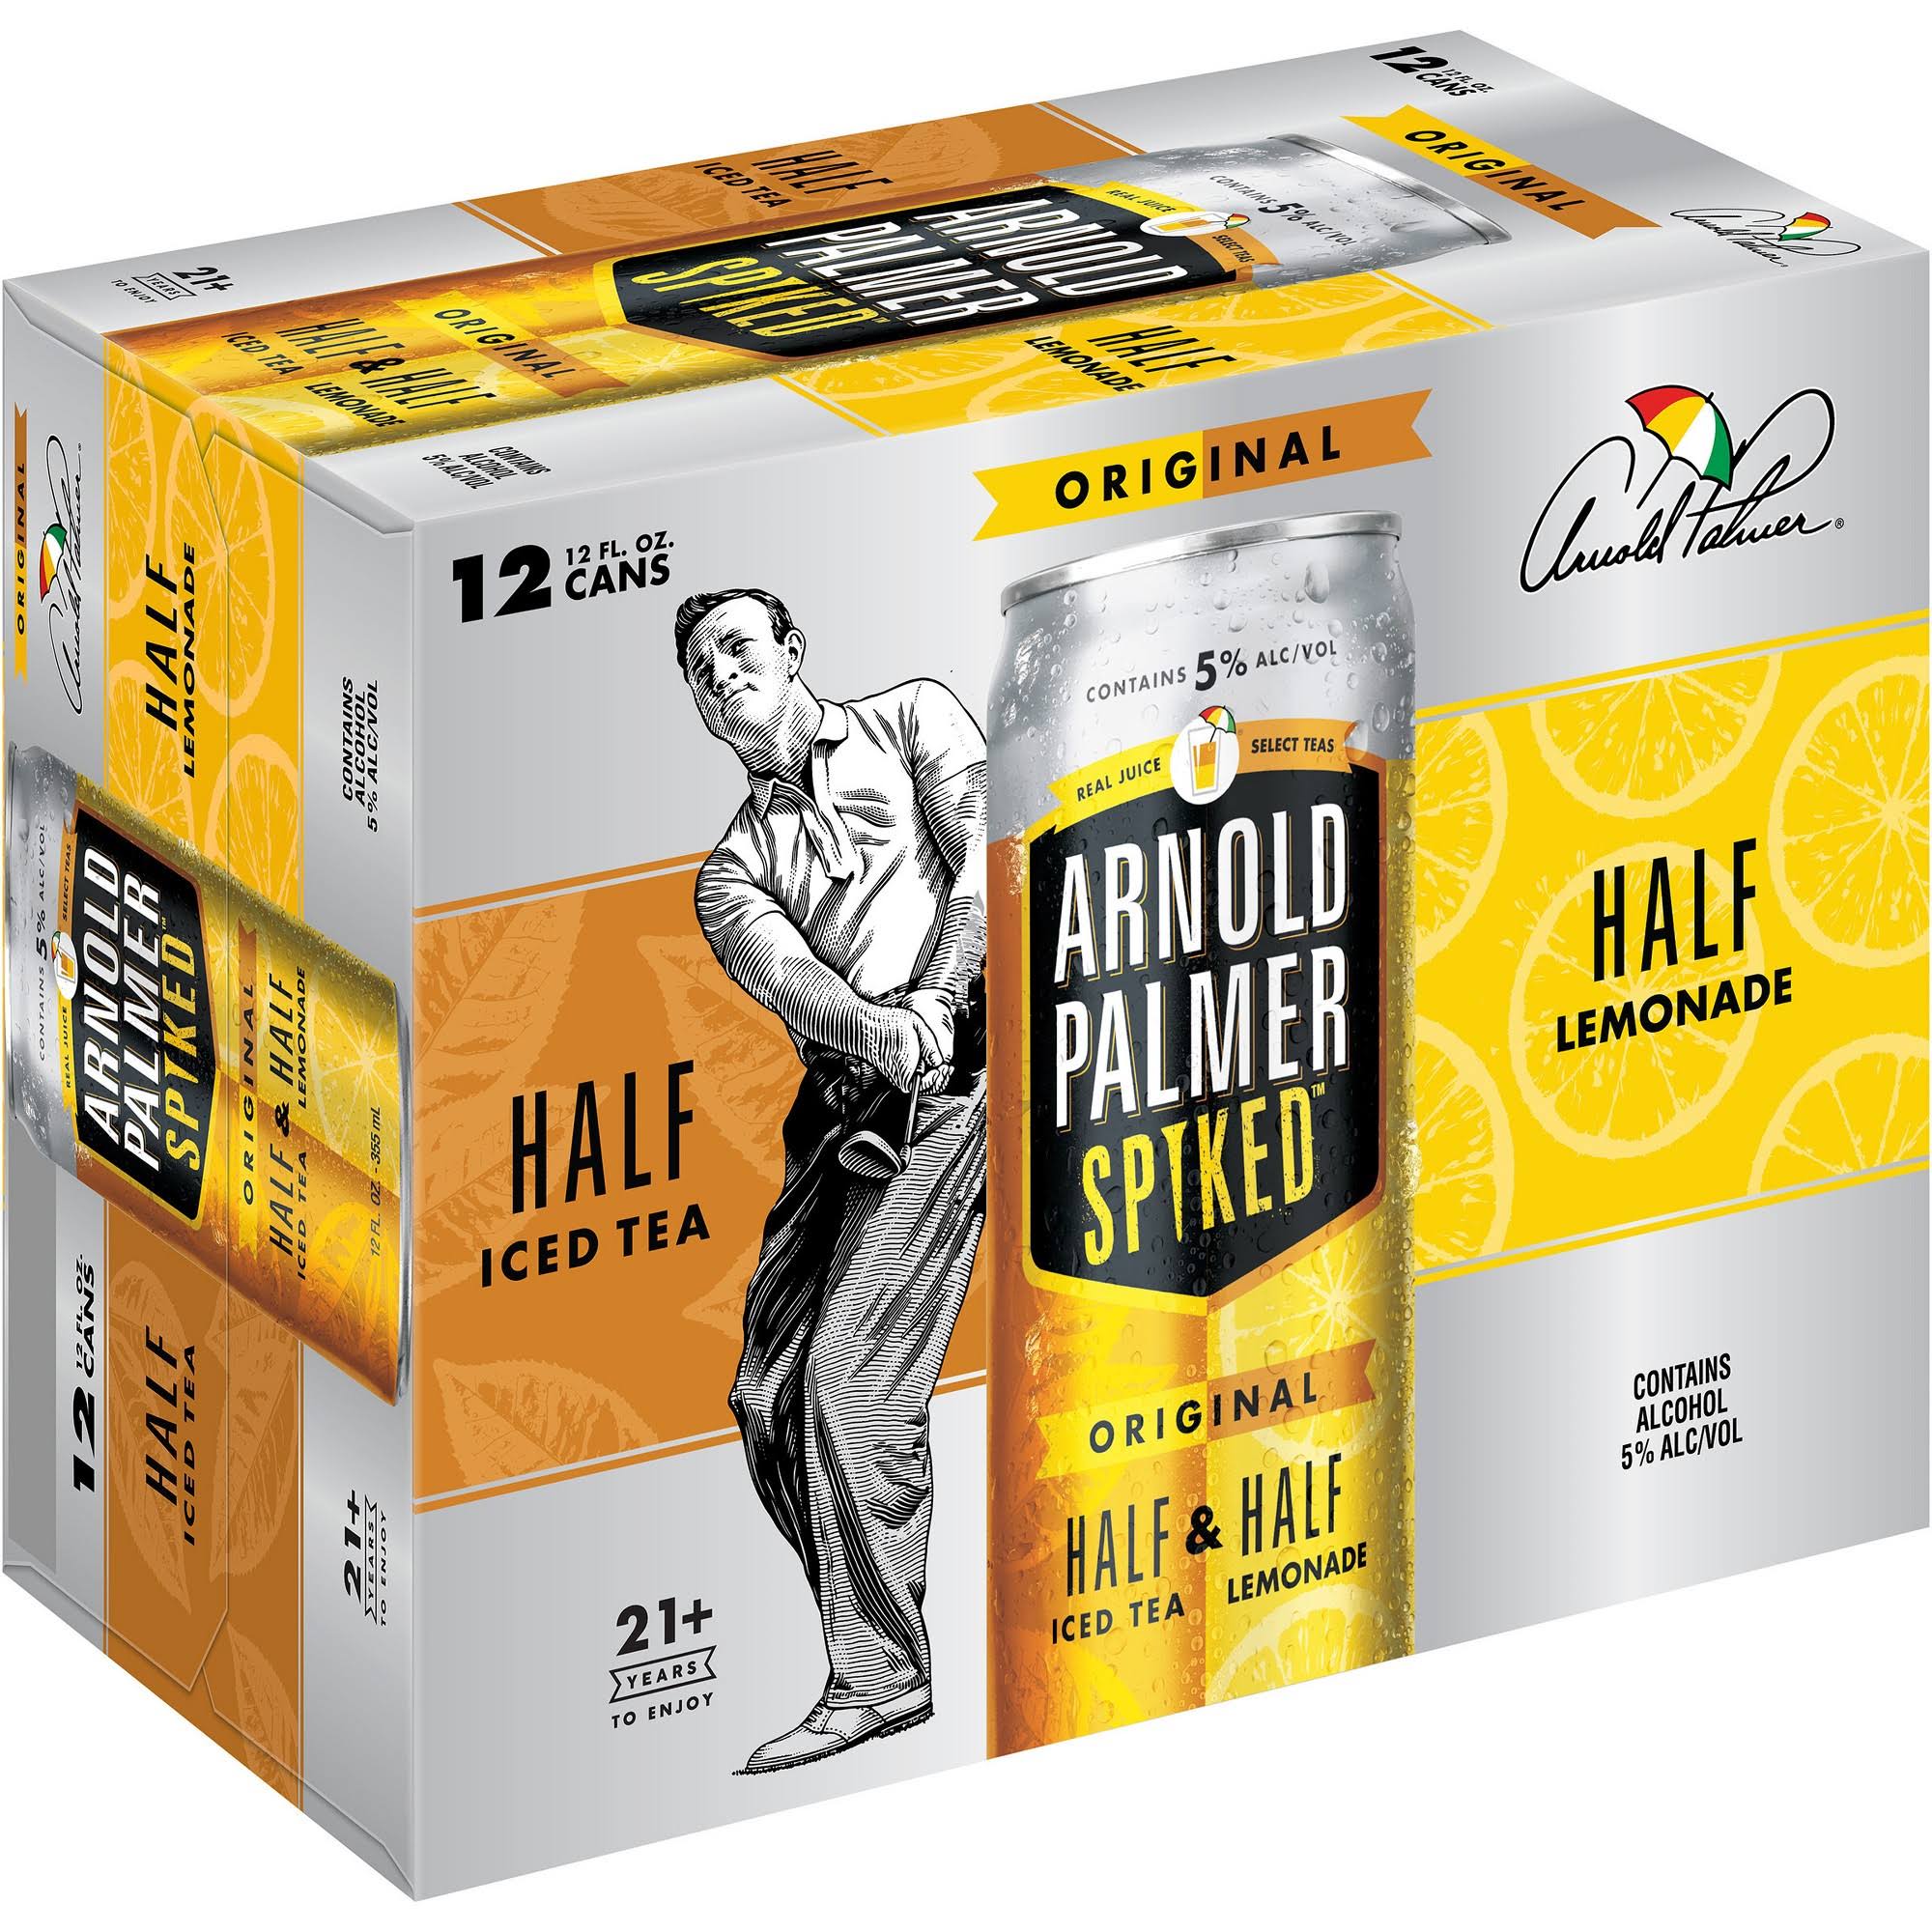 Arnold Palmer Spiked Beer, Half Iced Tea, Half Lemonade, Original - 12 pack, 12 fl oz cans